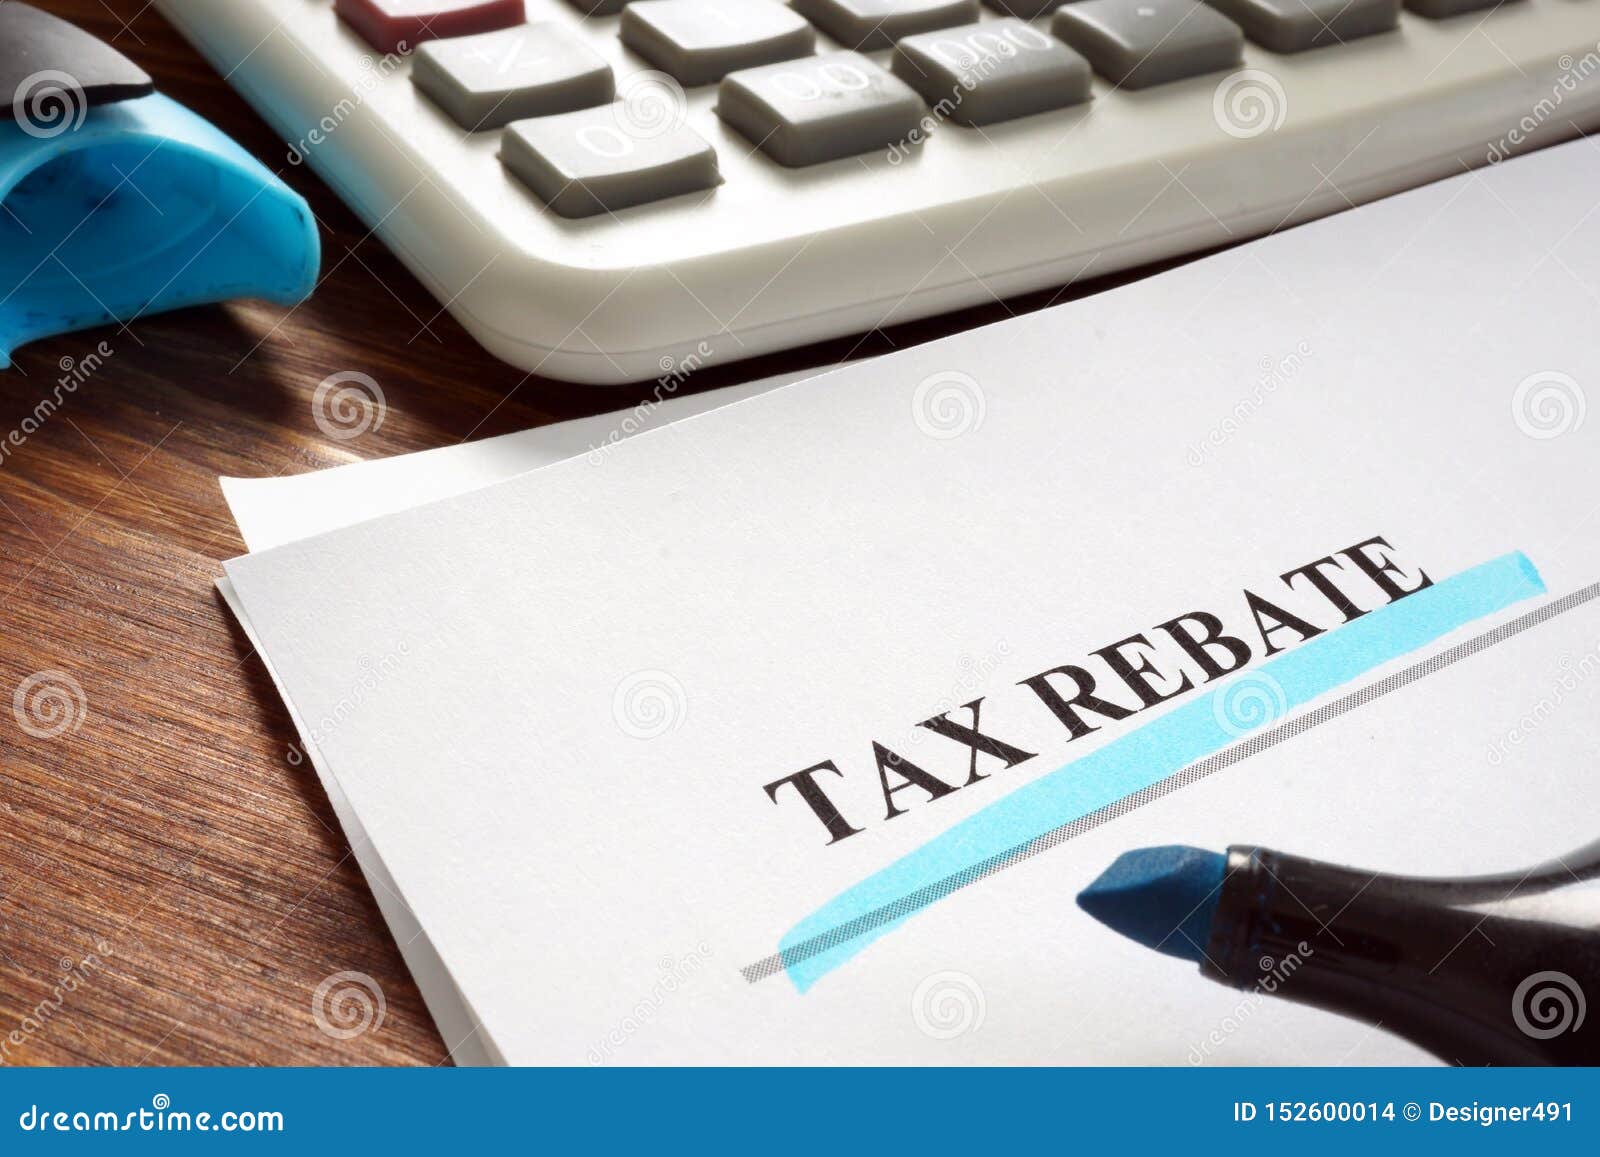 File Tax Rebate